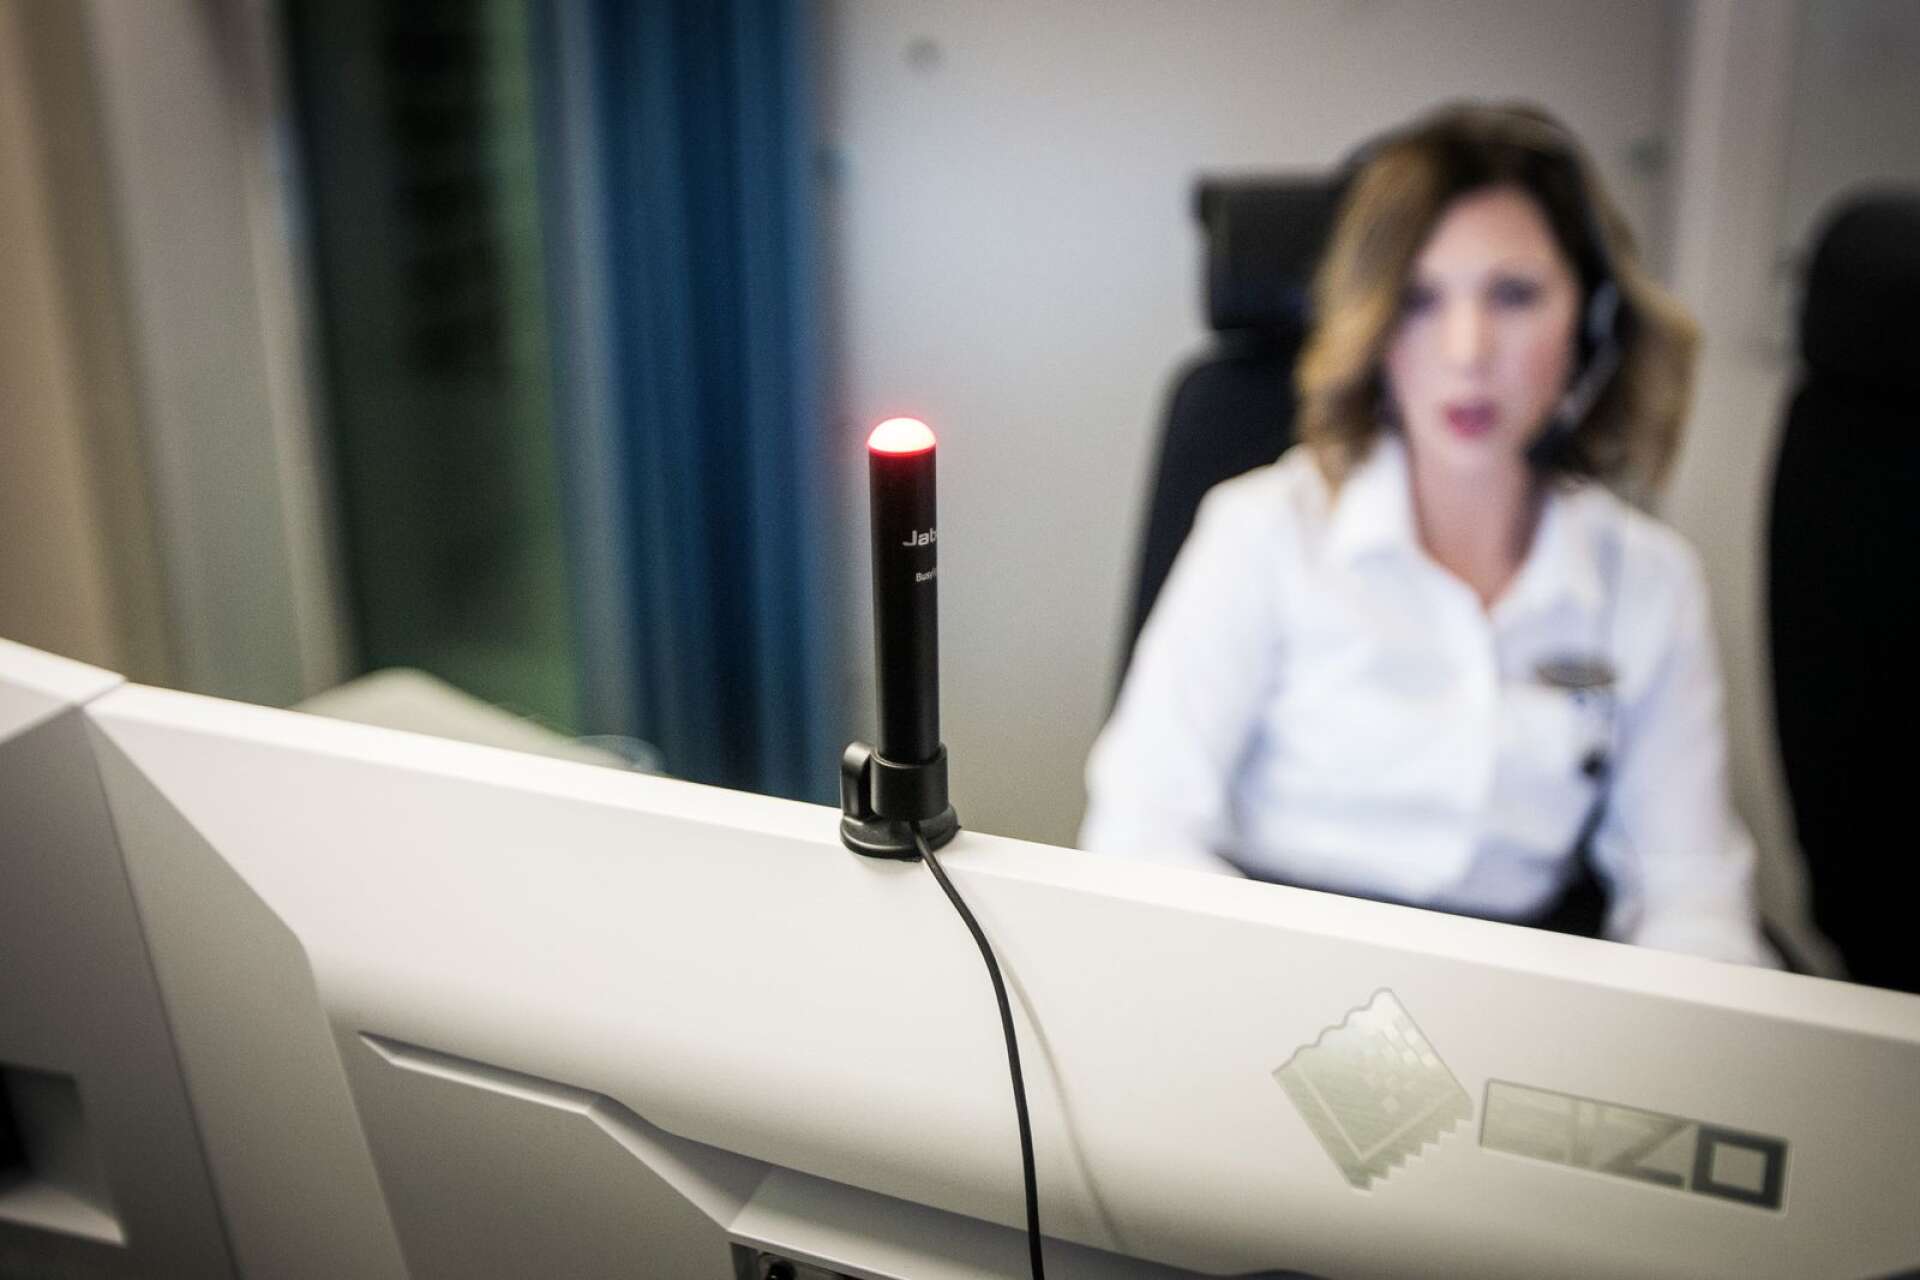 När Malin Stolt är upptagen i ett samtal lyser en lampa på hennes dator rött.